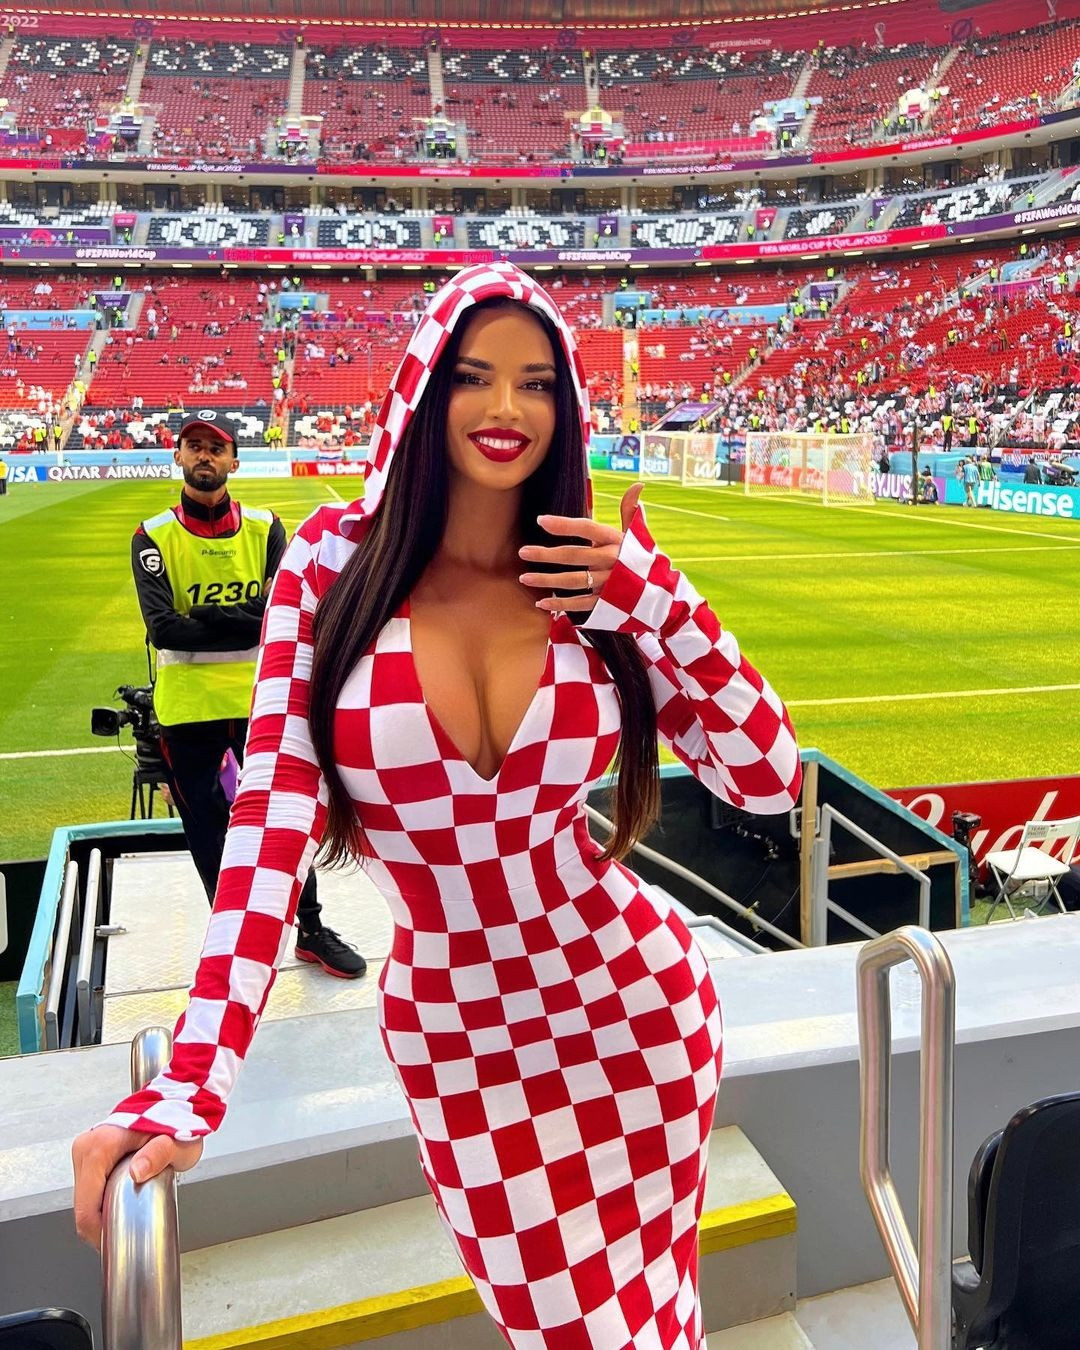 Thời trang của fan nữ nóng bỏng nhất World Cup tiếp tục gây sốc - 2